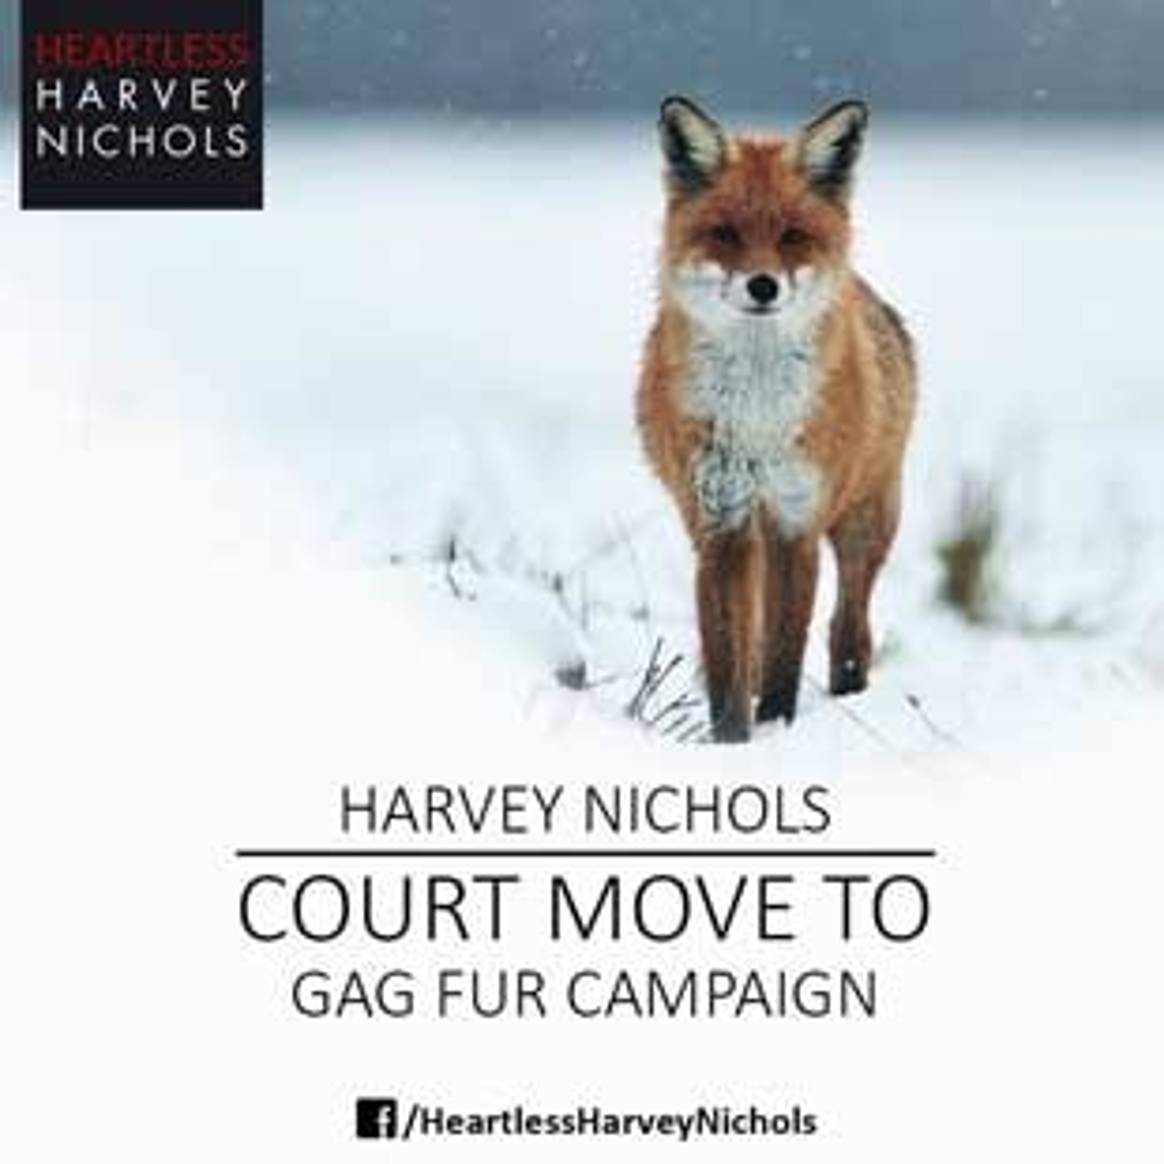 Harvey Nichols will gerichtlich gegen Pelzgegner vorgehen